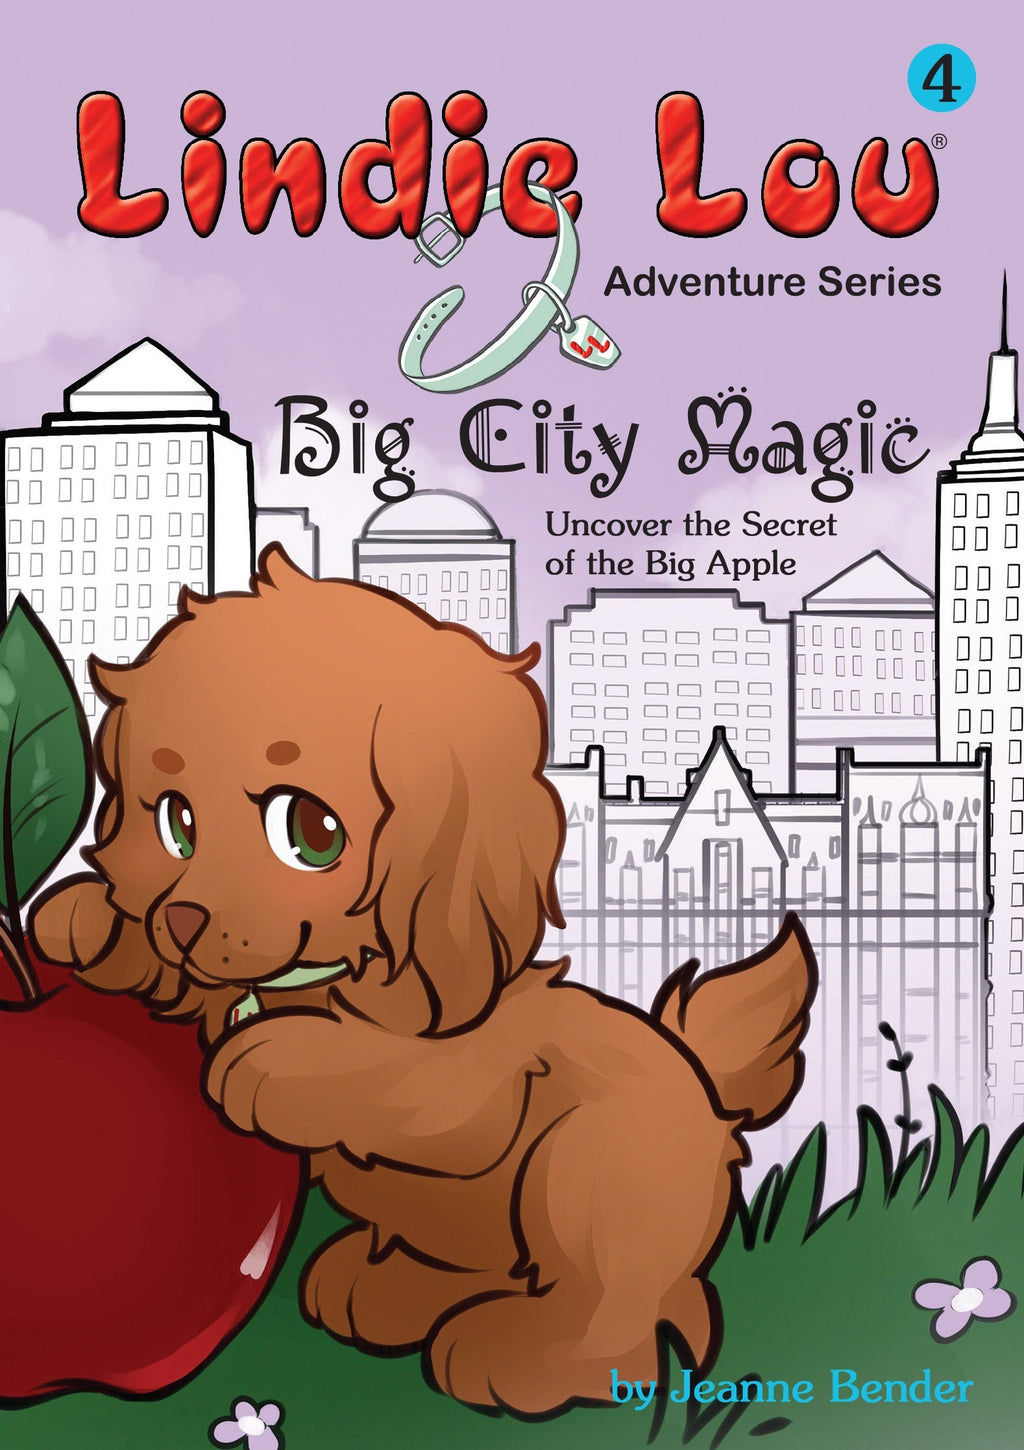 Big City Magic (HARDCOVER) - Lindie Lou Adventure Series Book 4